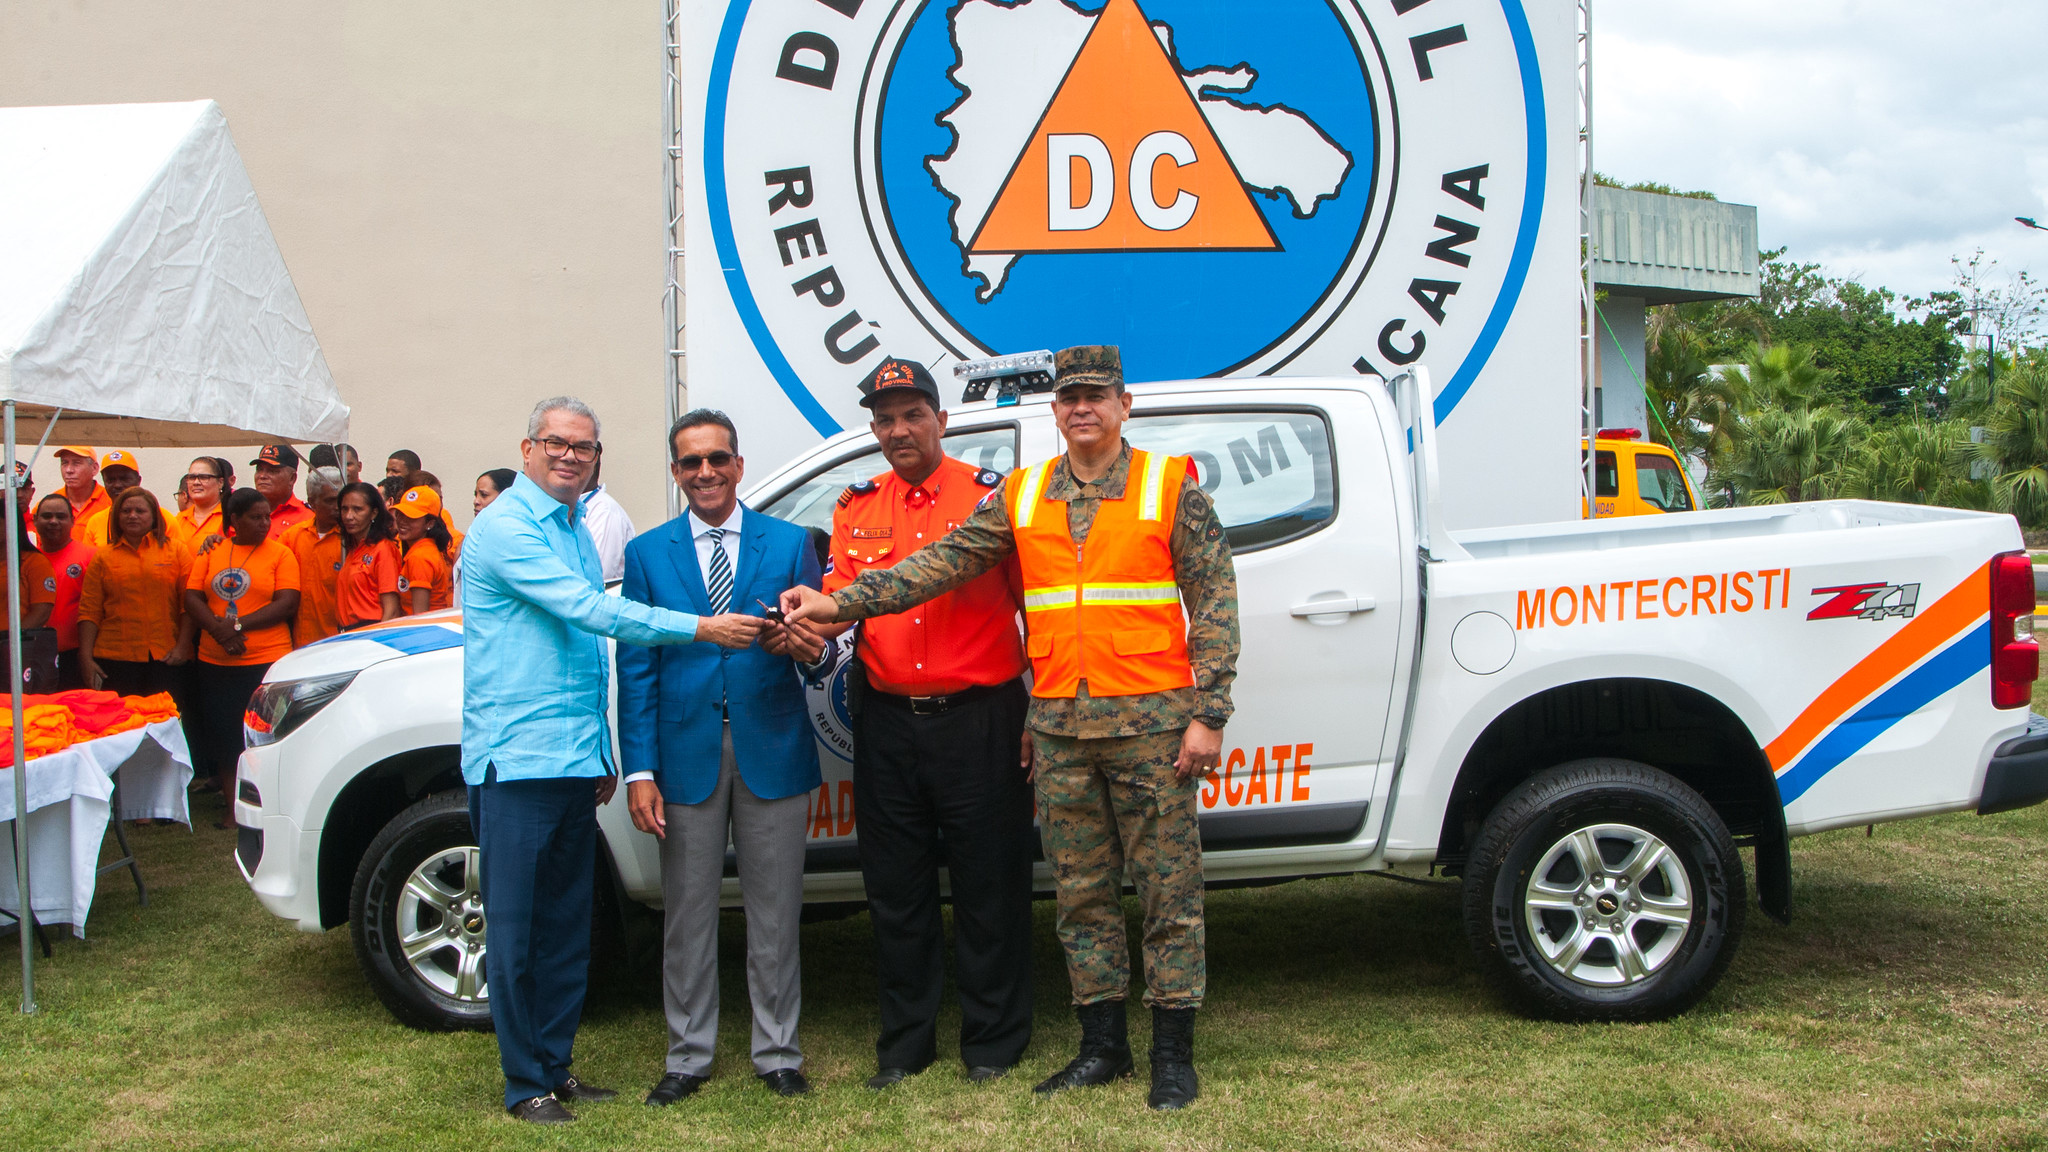 REPÚBLICA DOMINICANA: Gobierno cumple promesa Visita Sorpresa 260; dona camioneta y equipos de rescate a Defensa Civil de Montecristi